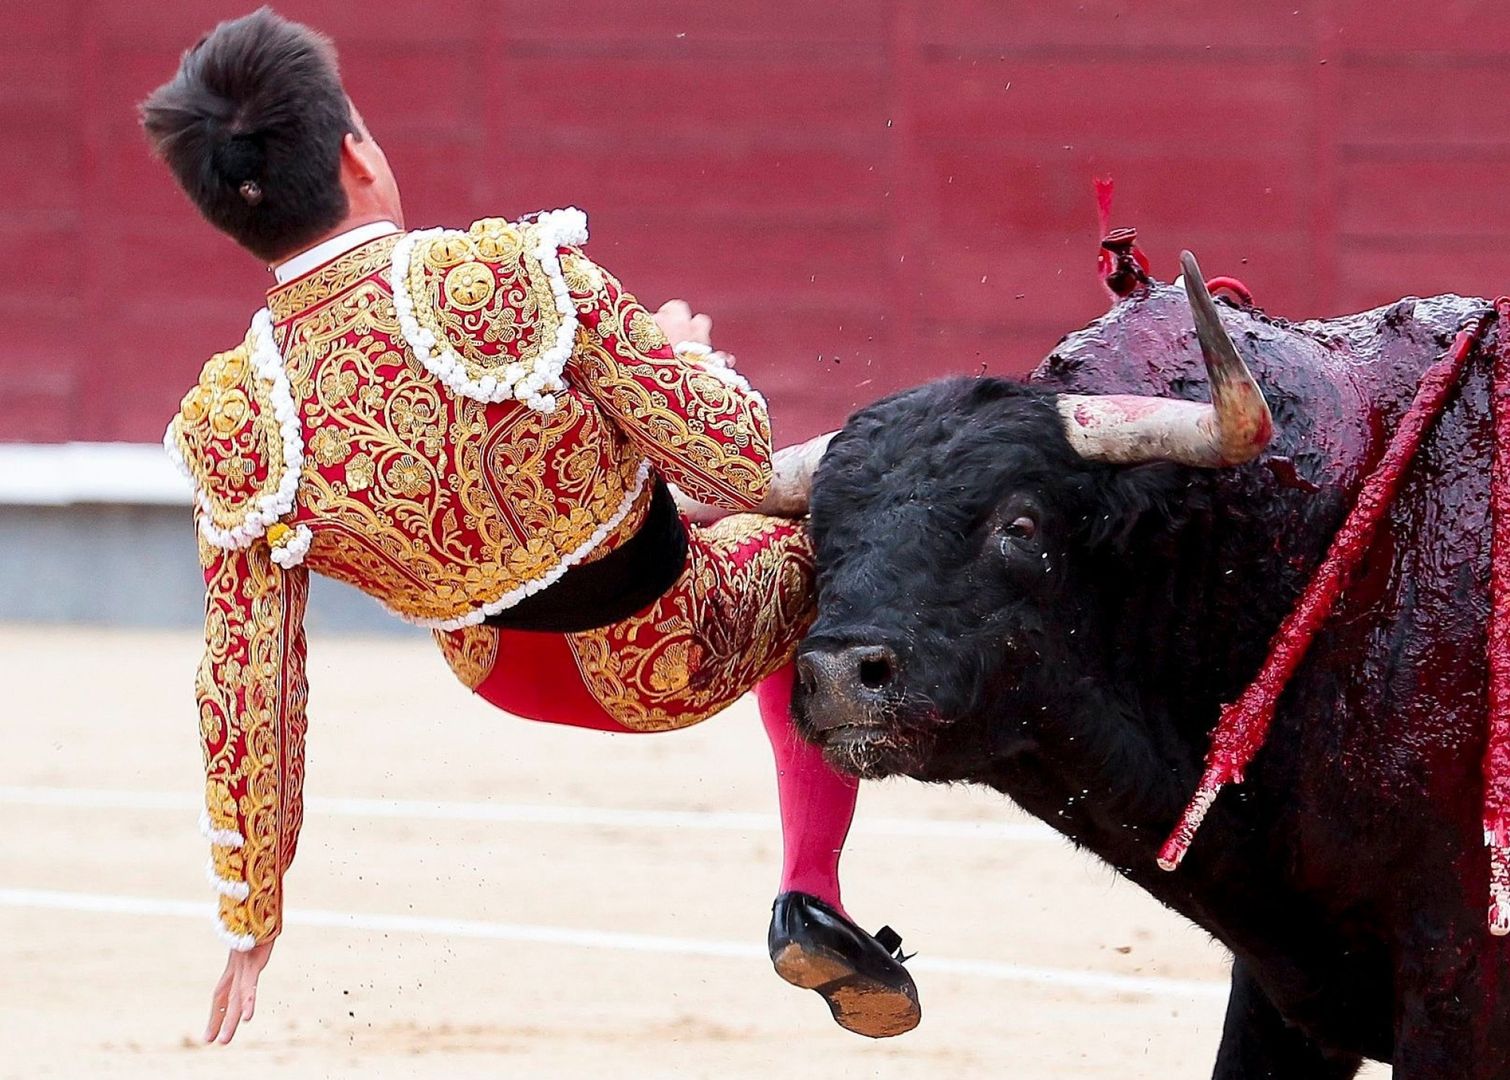 hiszpania madryt matador